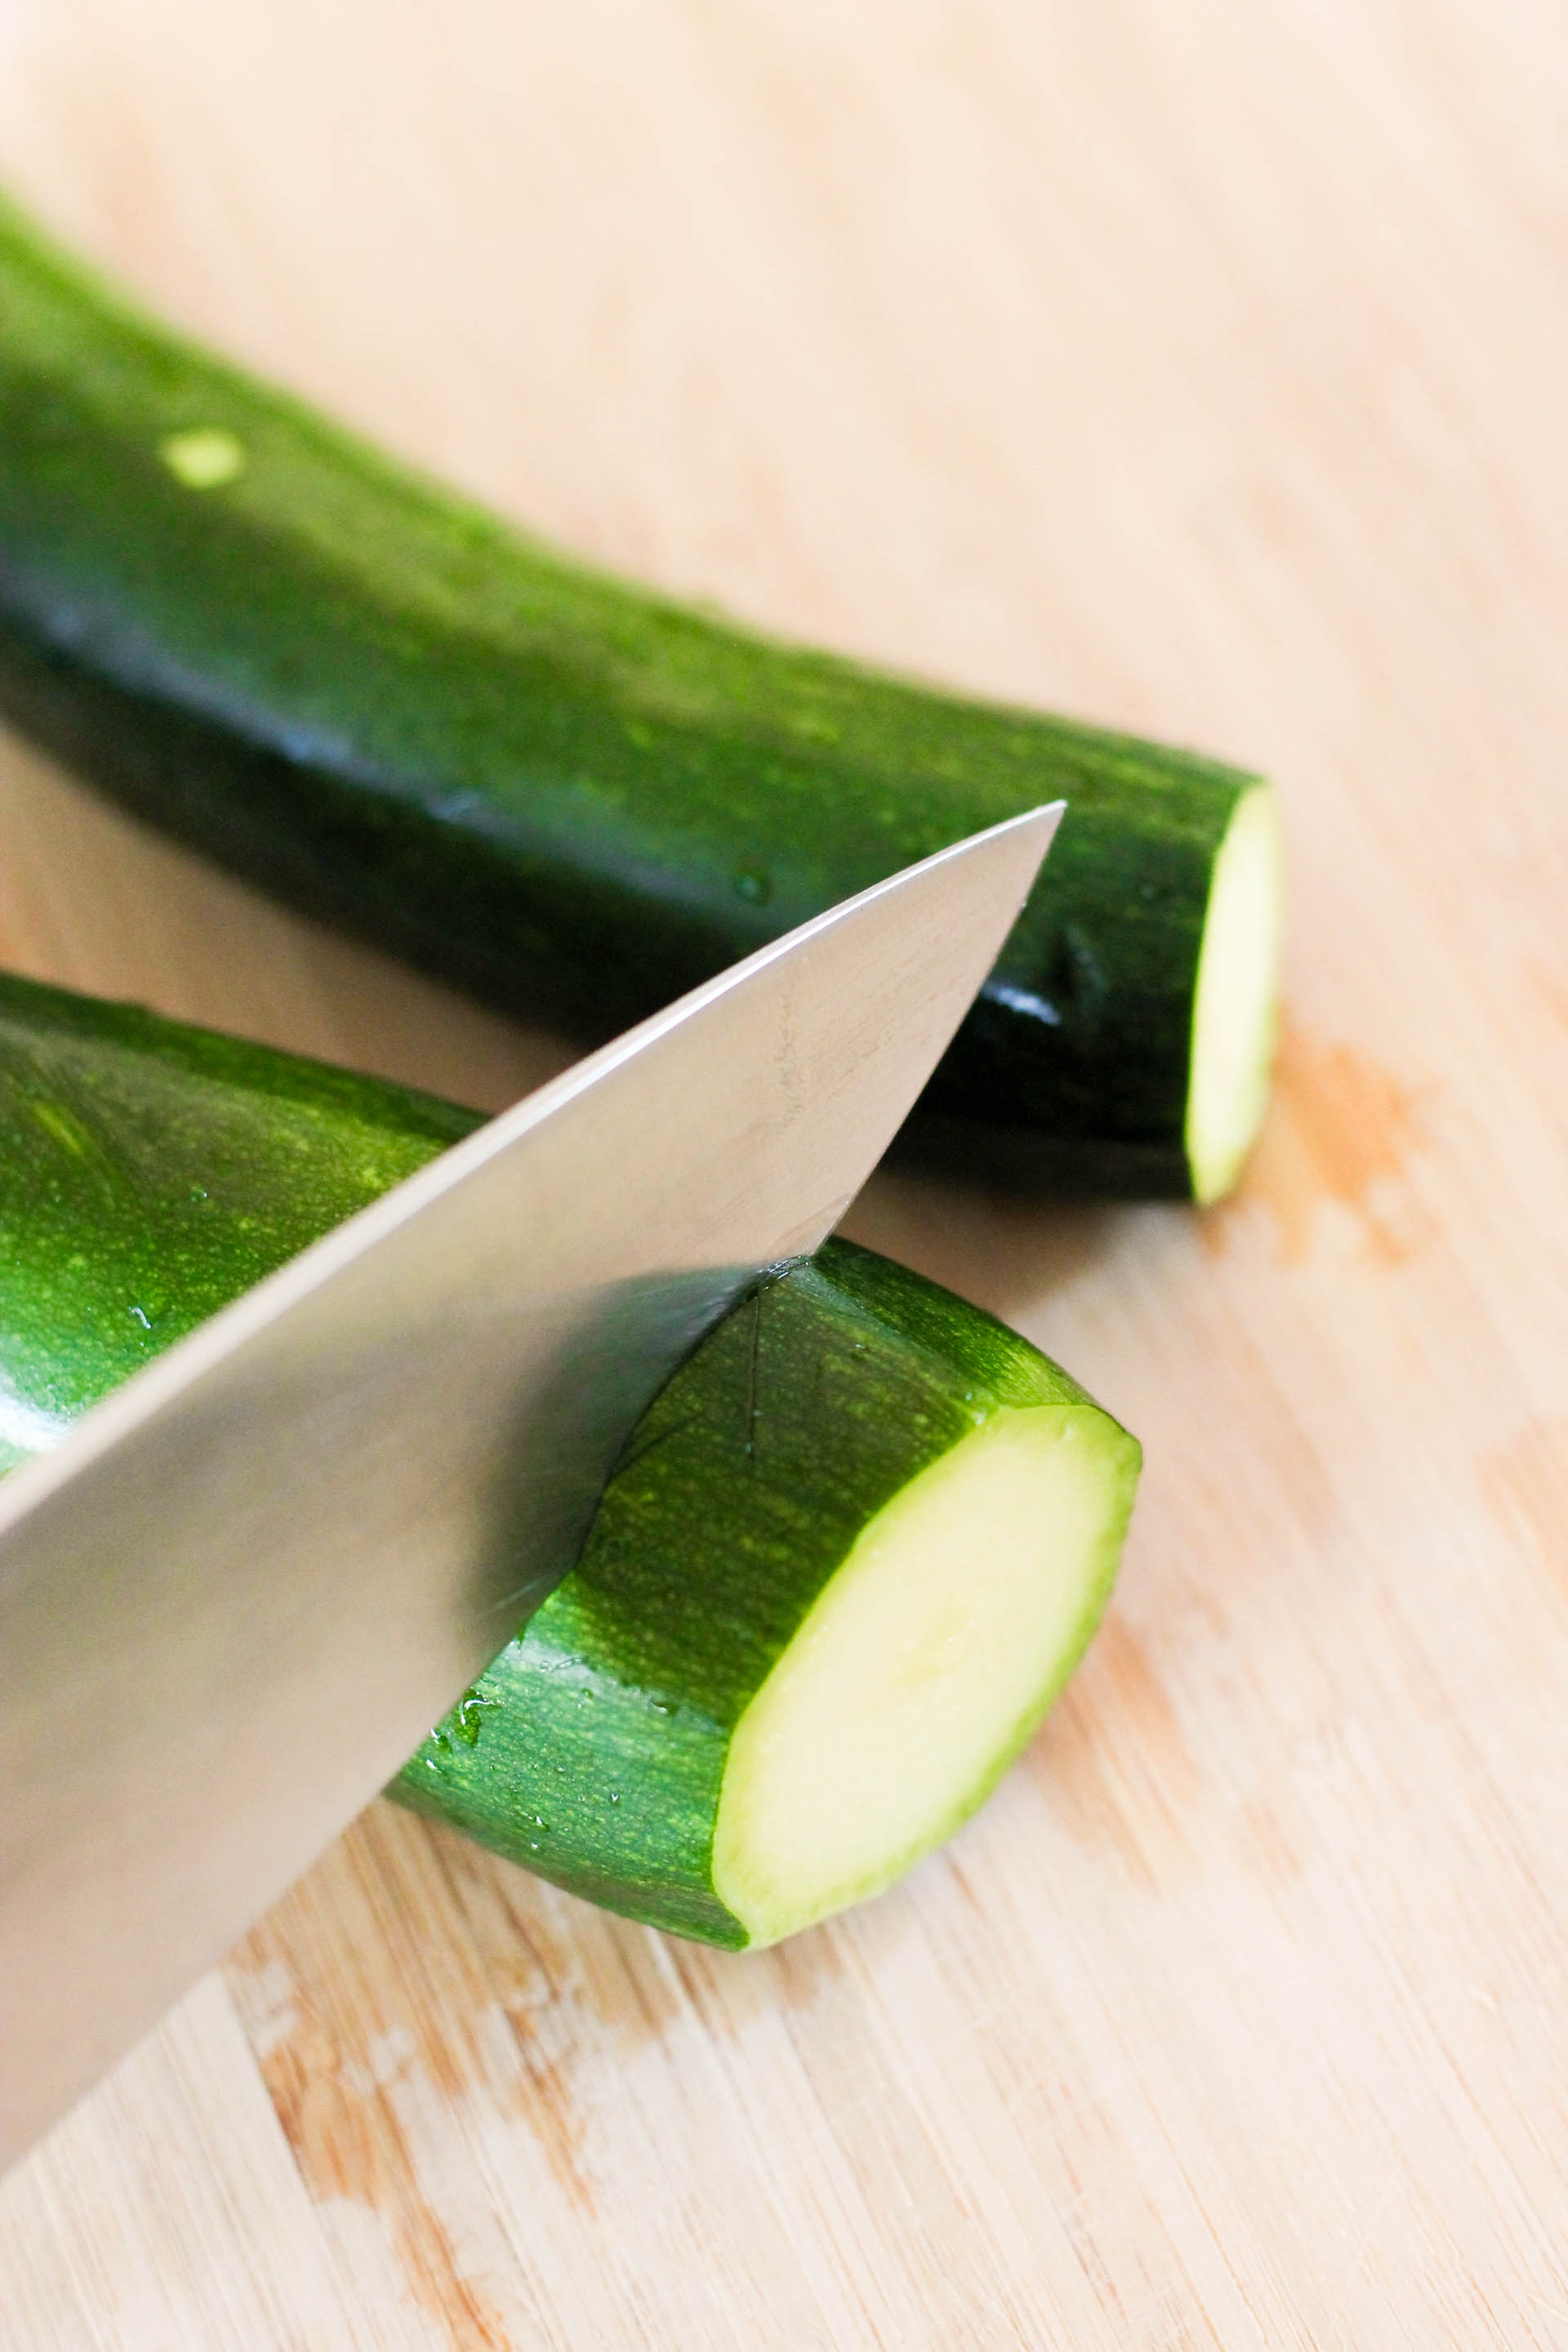 A knife slicing a zucchini